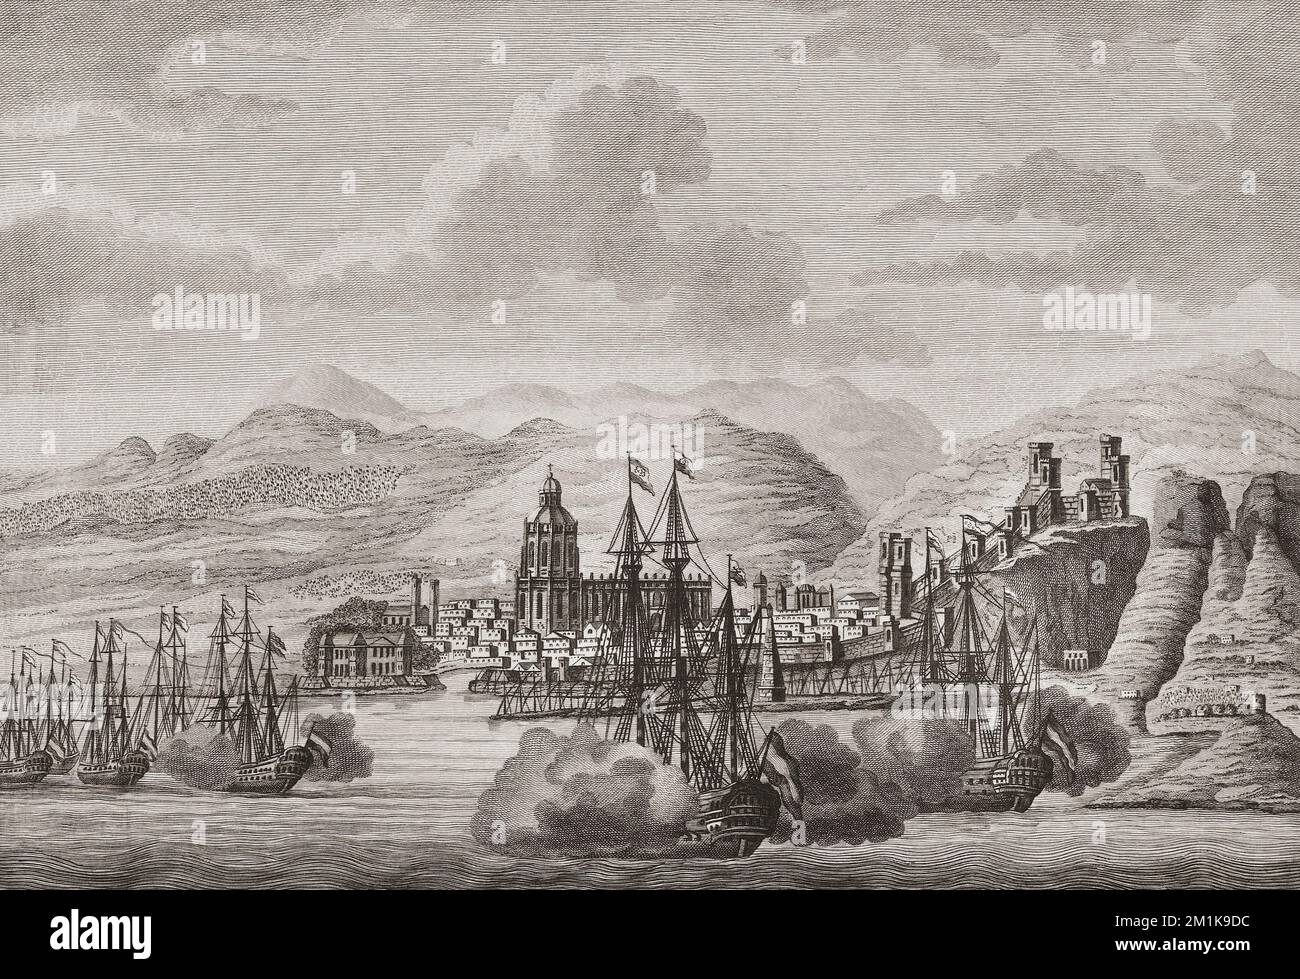 Die niederländische Flotte vor Malaga, Spanien, im Jahr 1784, um den Geburtstag von Karl III/Carlos III, König von Spanien, zu feiern. Die niederländischen Schiffe feuern einen Salut. Aus einem Abdruck von Antonio Suntach. Stockfoto